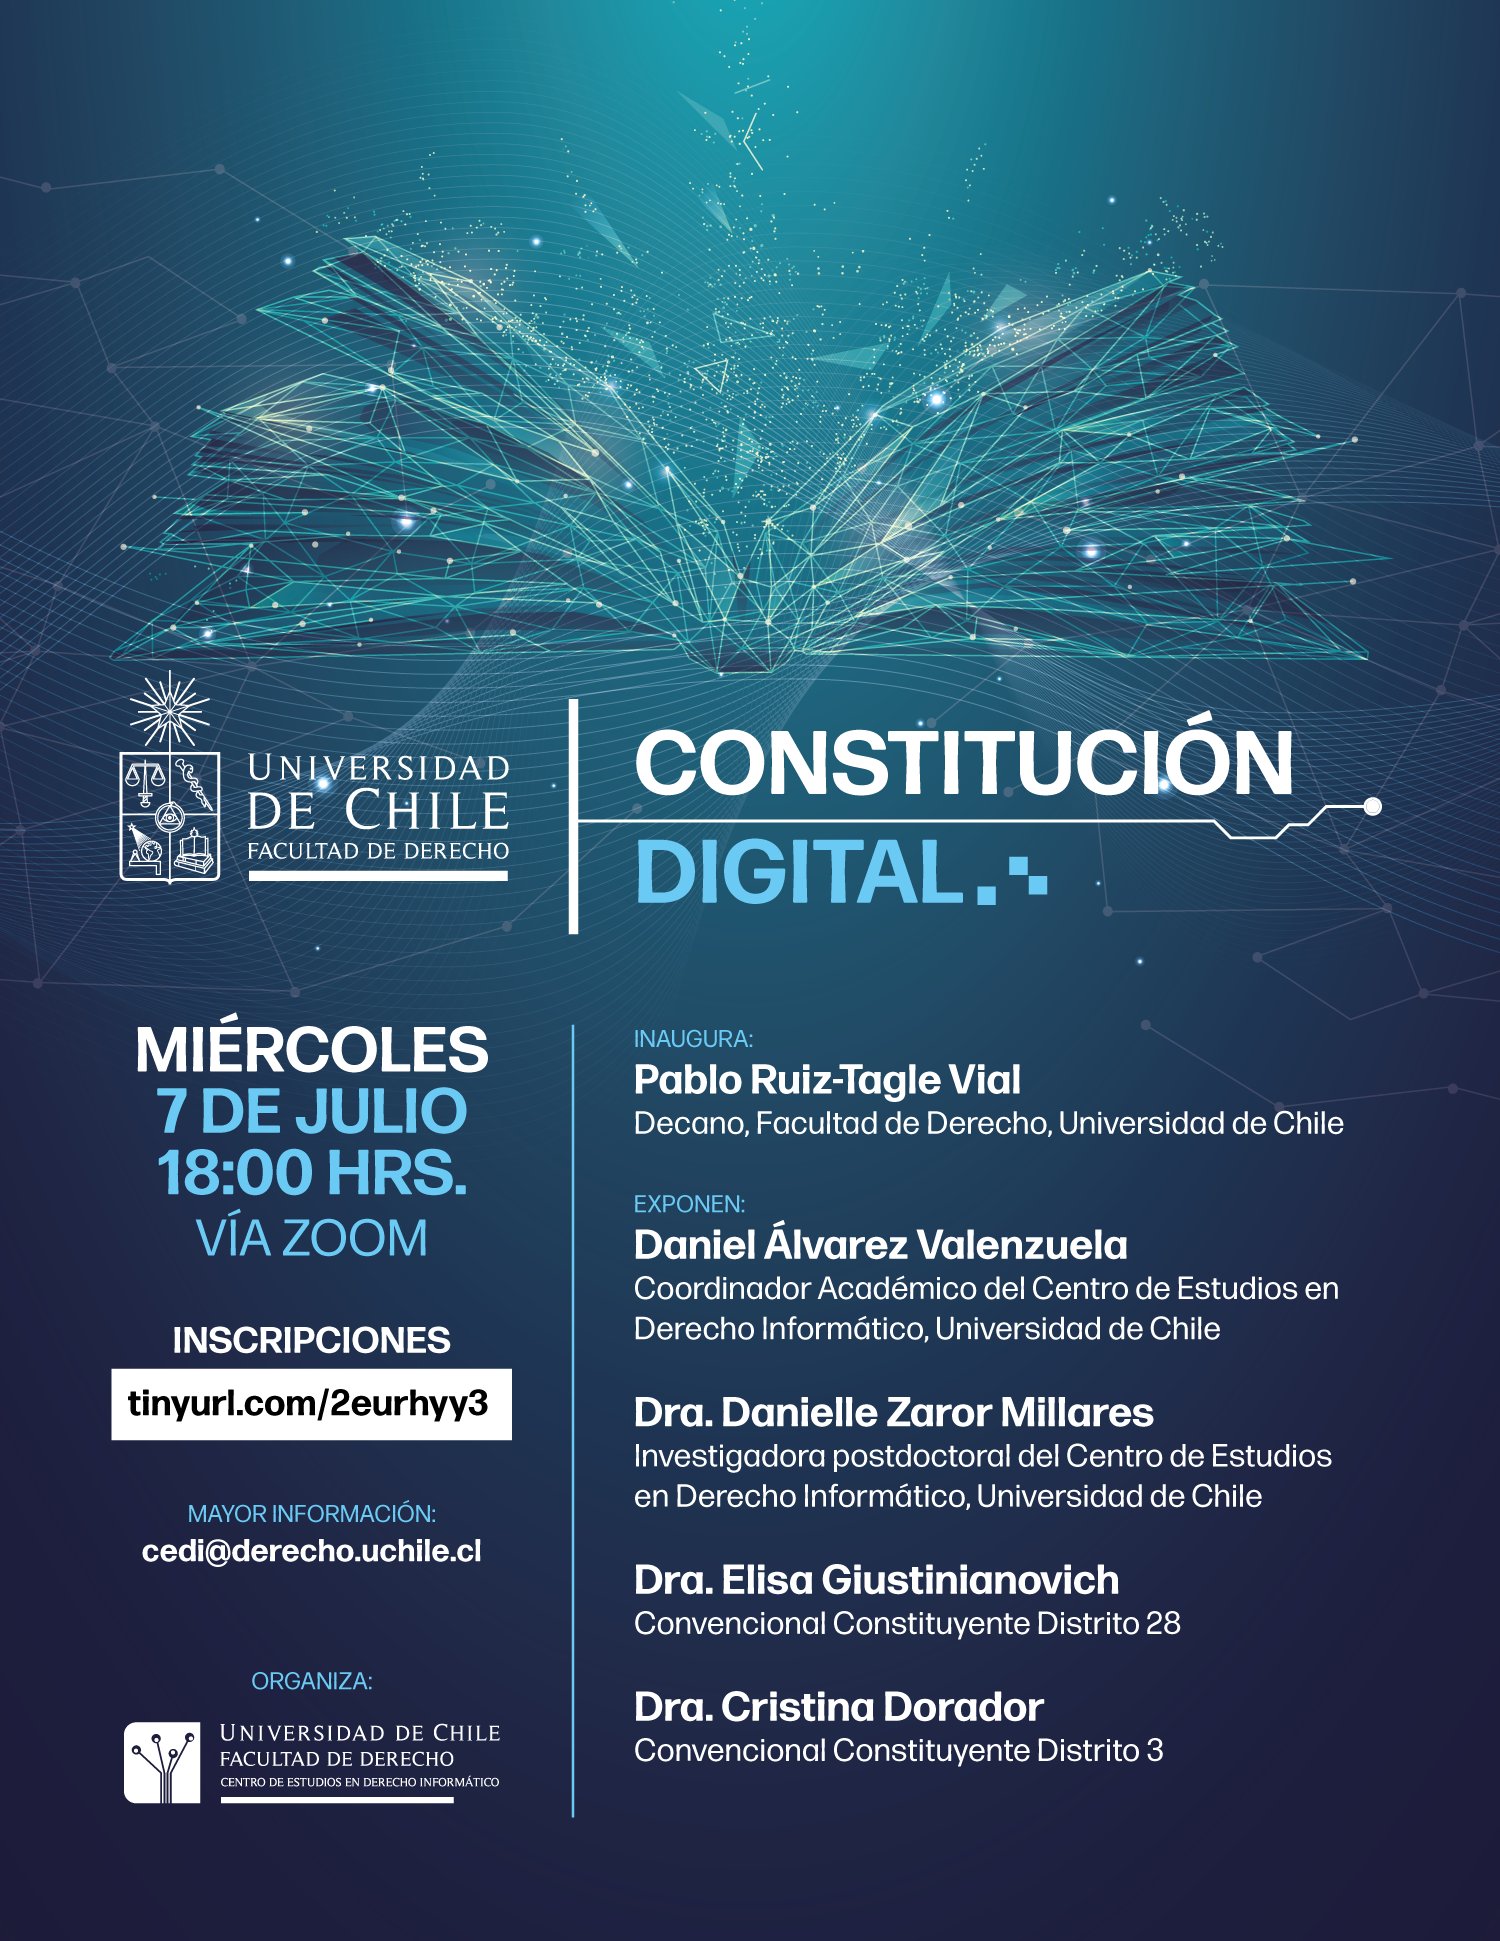 Una Constitución digital